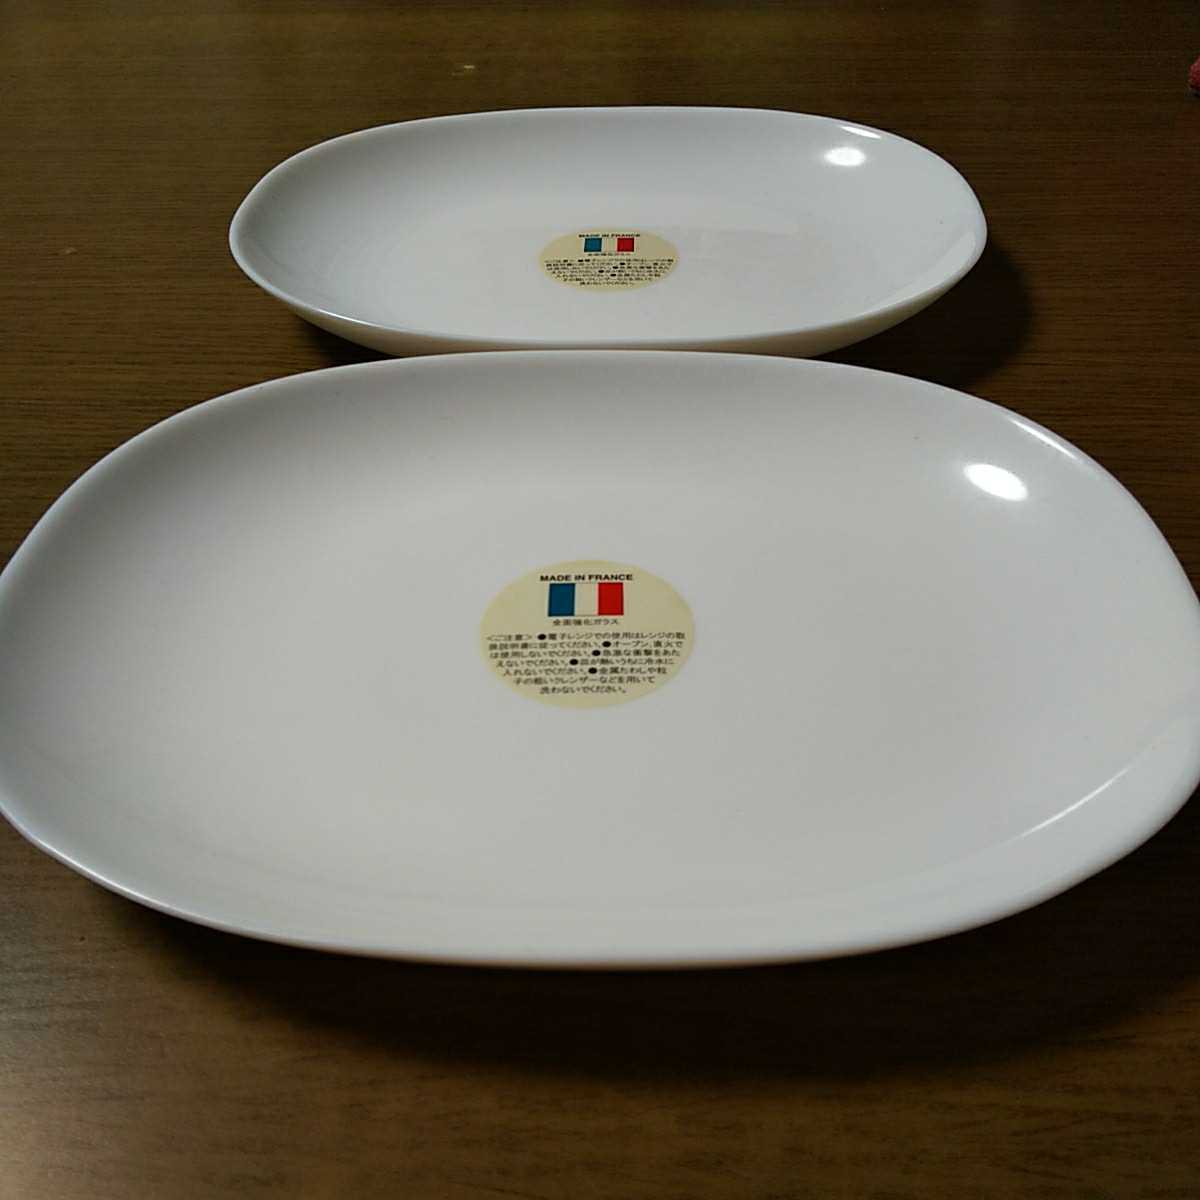 【送料無料】ヤマザキ春のパン祭り山崎春のパンまつり 2005年白いモーニングプレート2枚セット 白い皿 アルクフランス社製の画像2